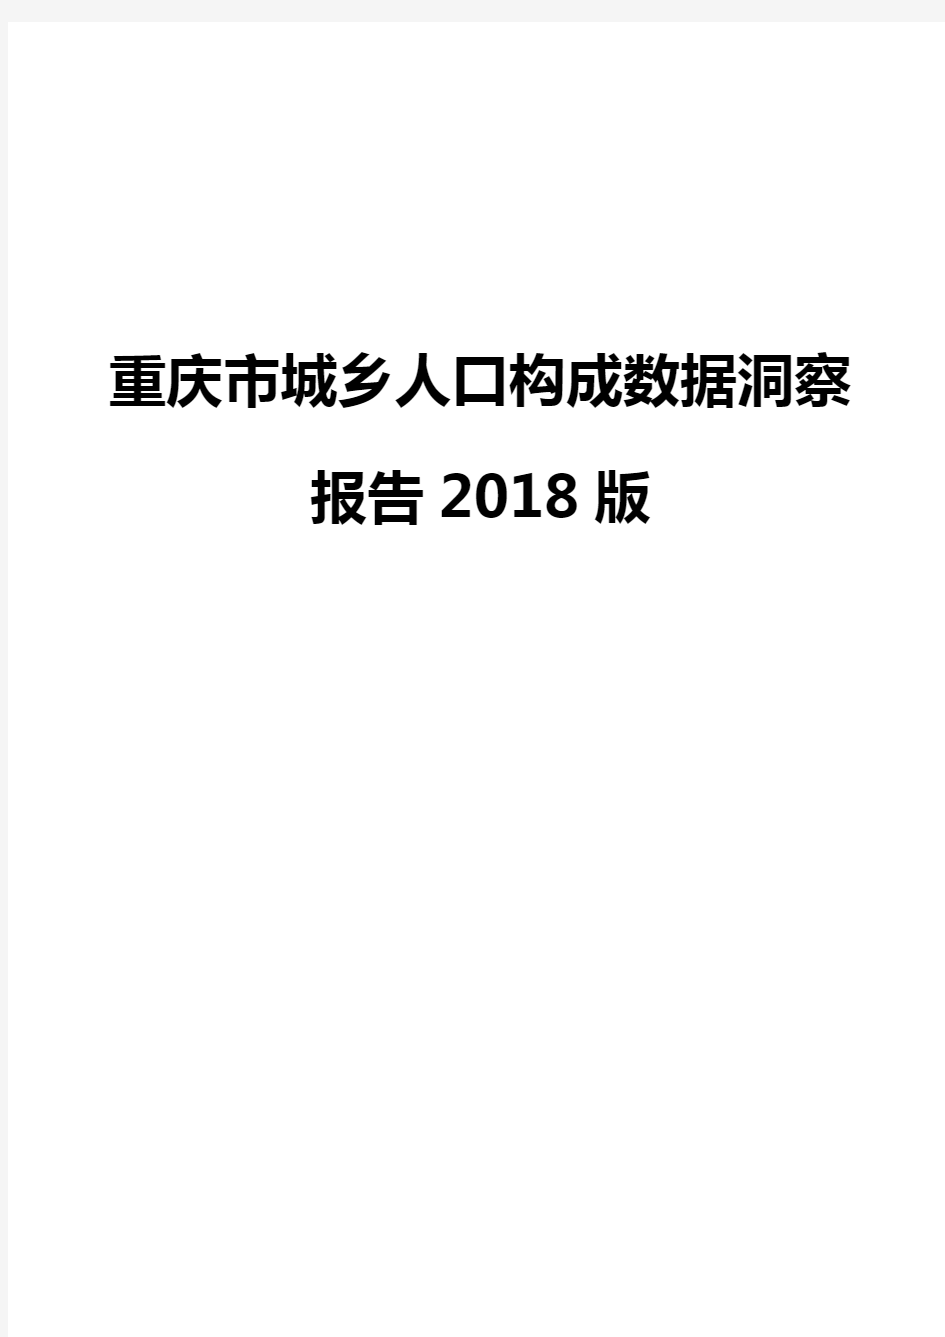 重庆市城乡人口构成数据洞察报告2018版